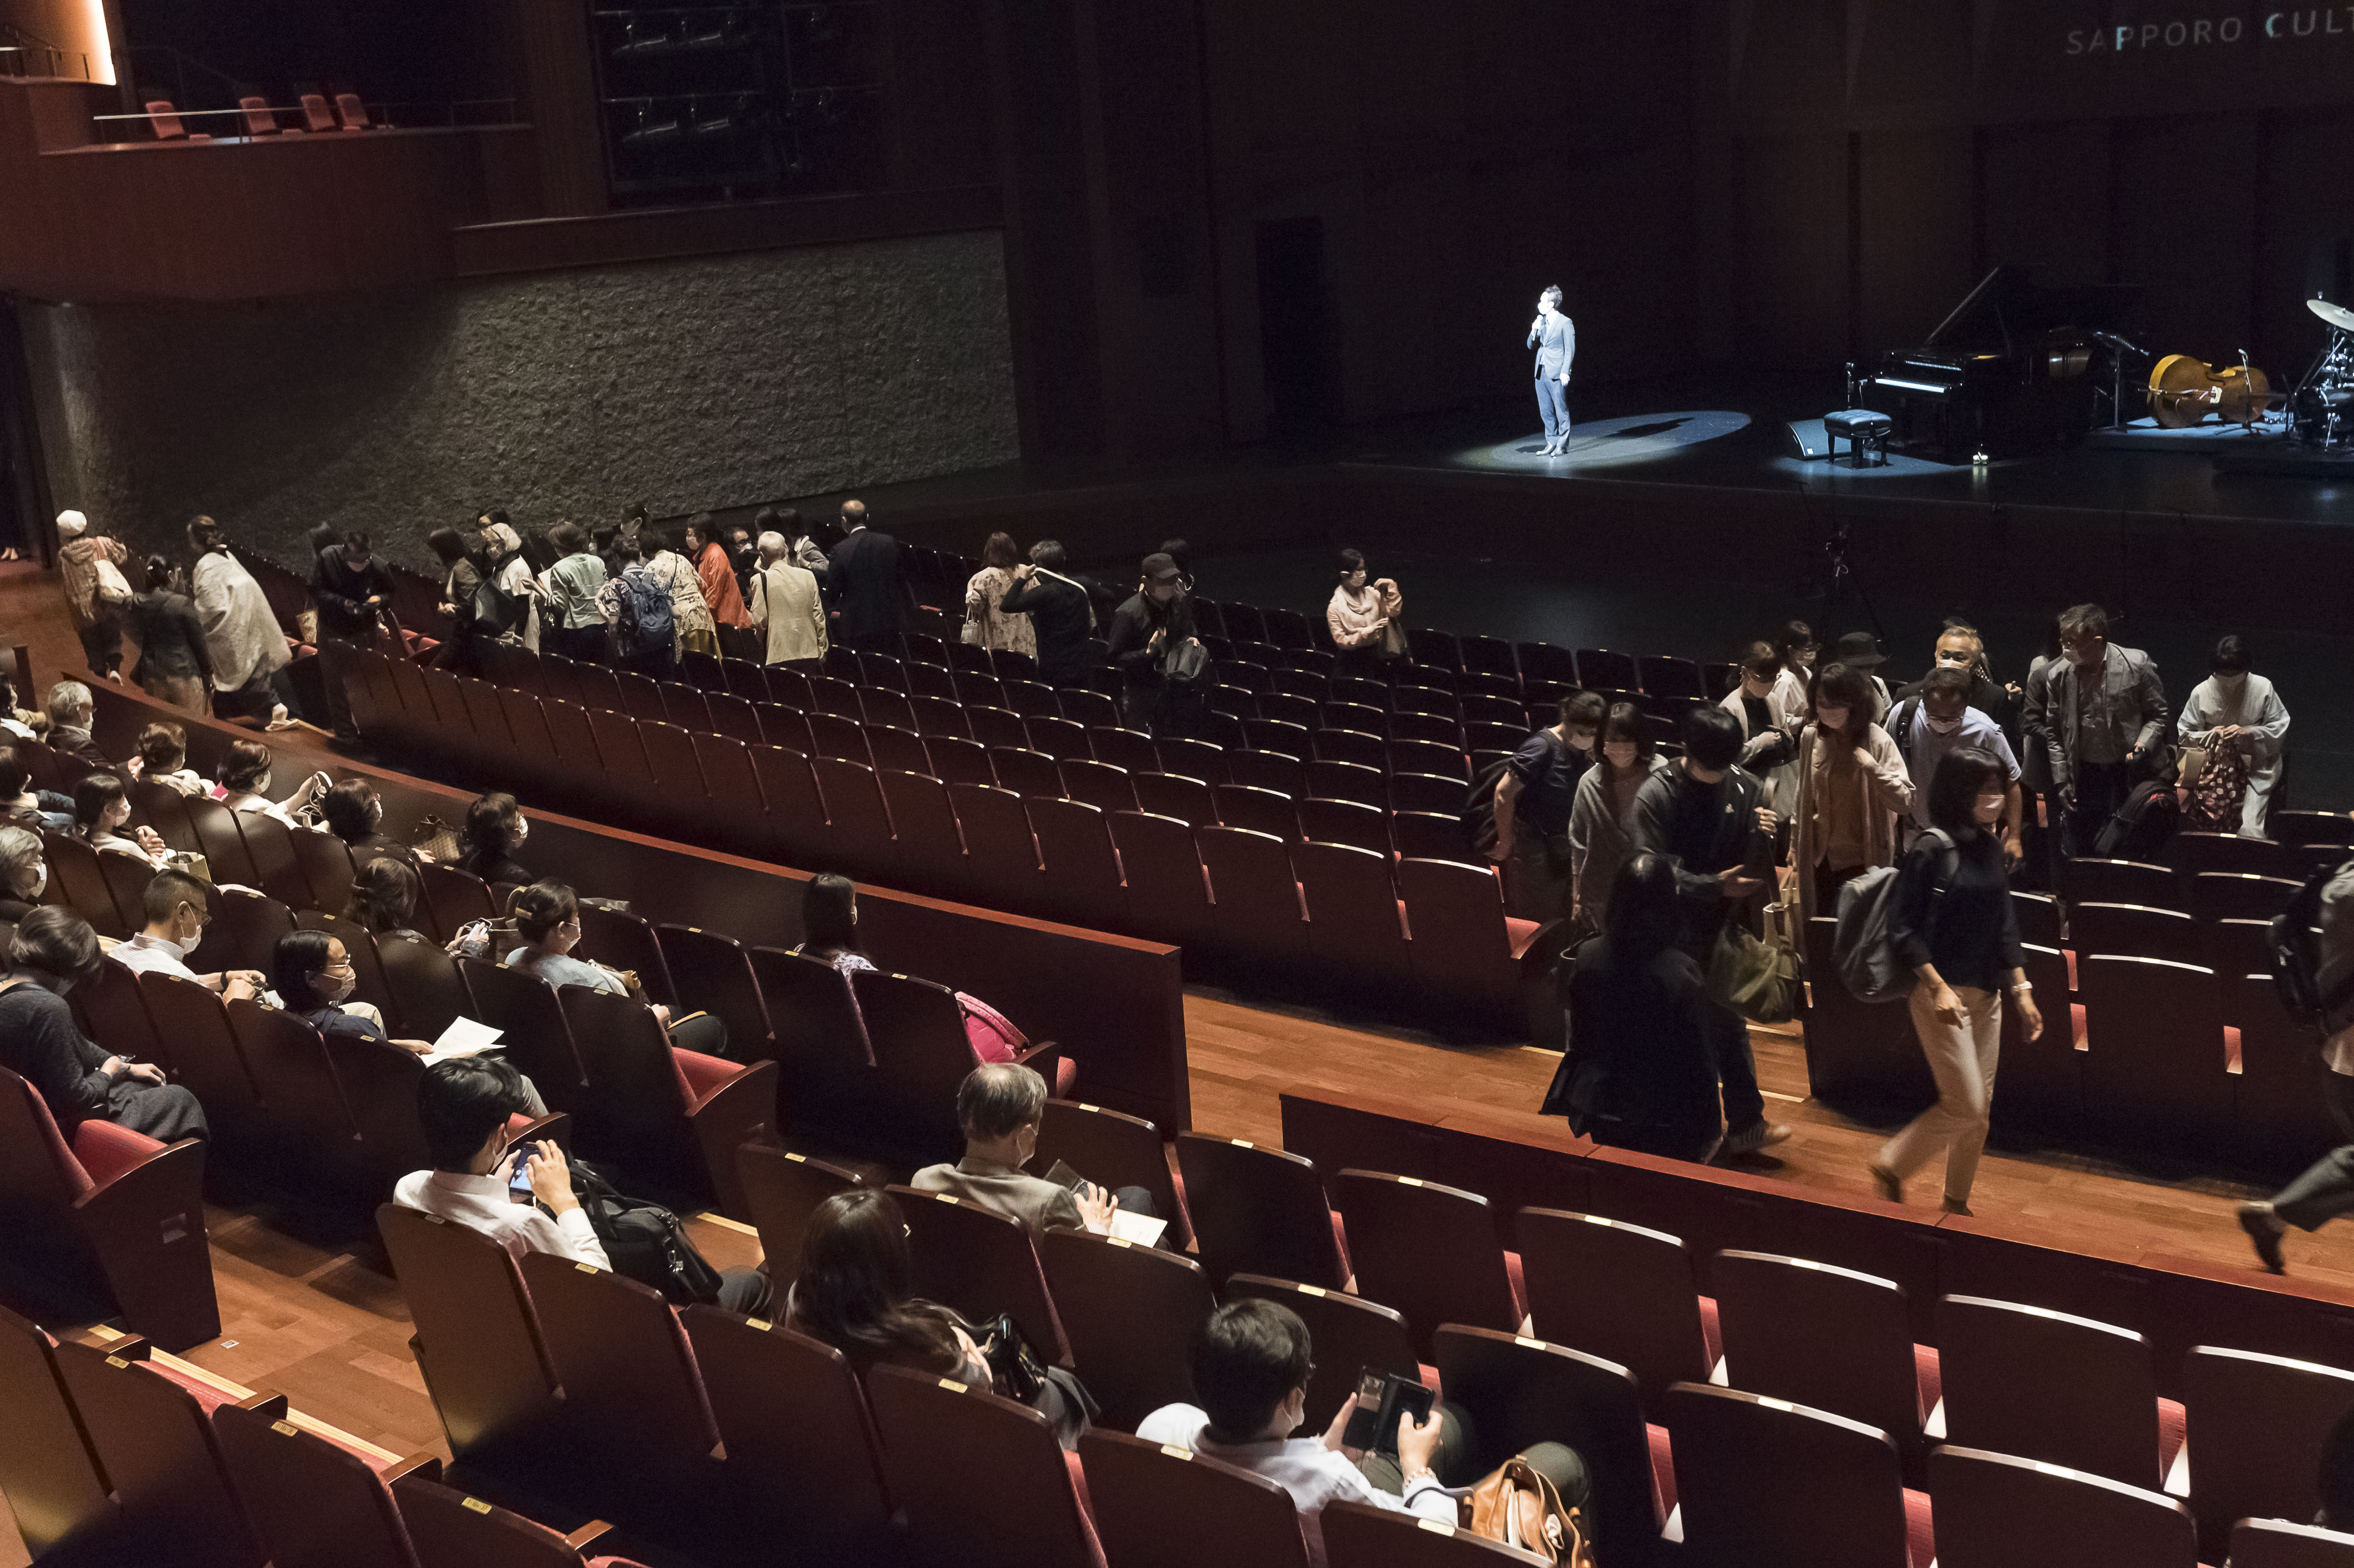 札幌文化芸術劇場 Hitaru 公演再開に向けたテストコンサート ともそう Tomorrow を実施しました お知らせ 札幌市民交流プラザ